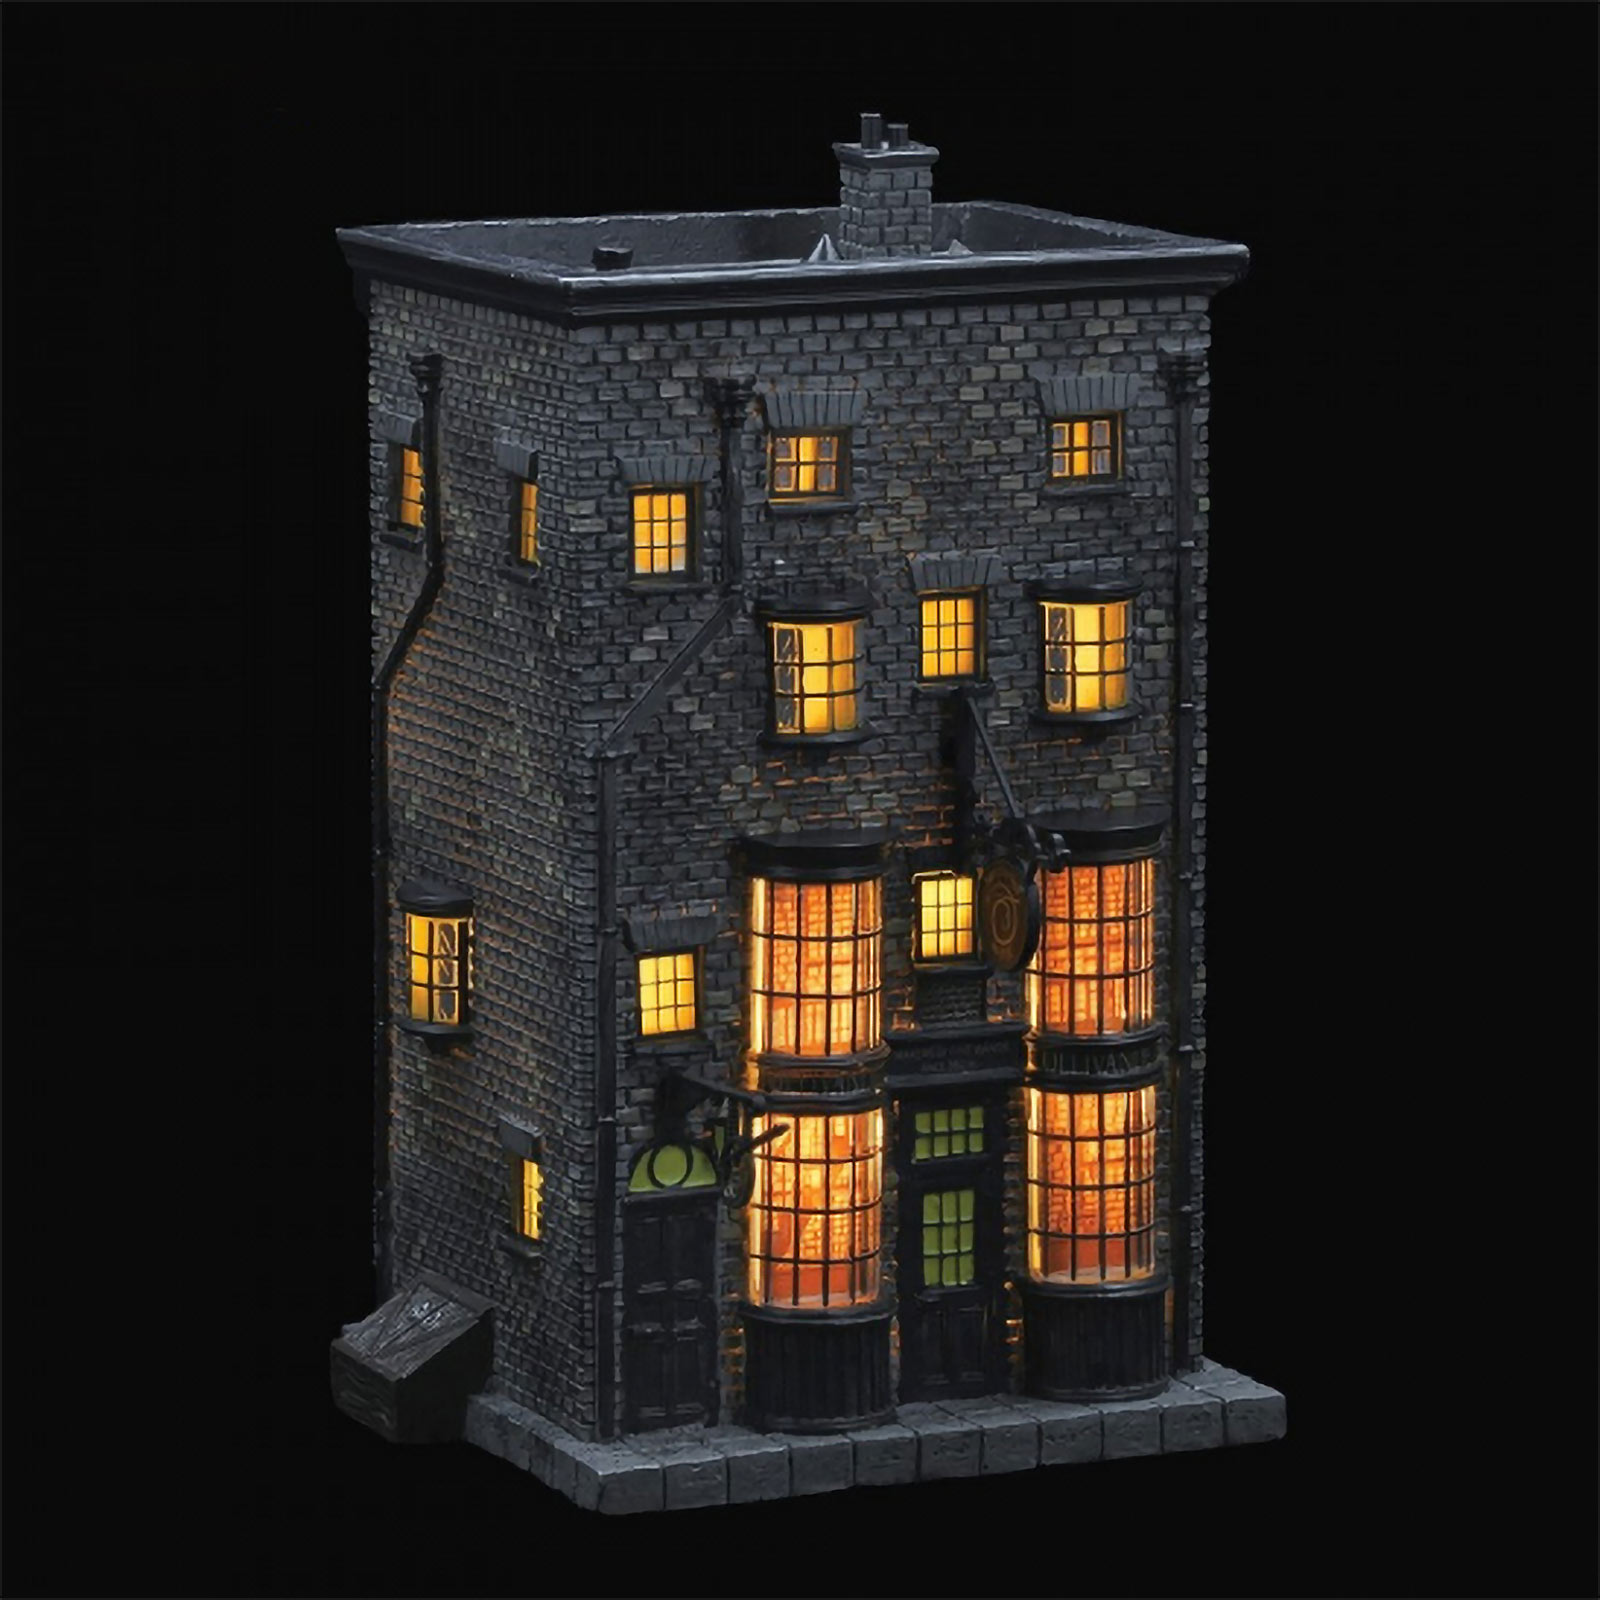 Ollivanders Zauberstabladen Miniatur Replik mit Beleuchtung - Harry Potter